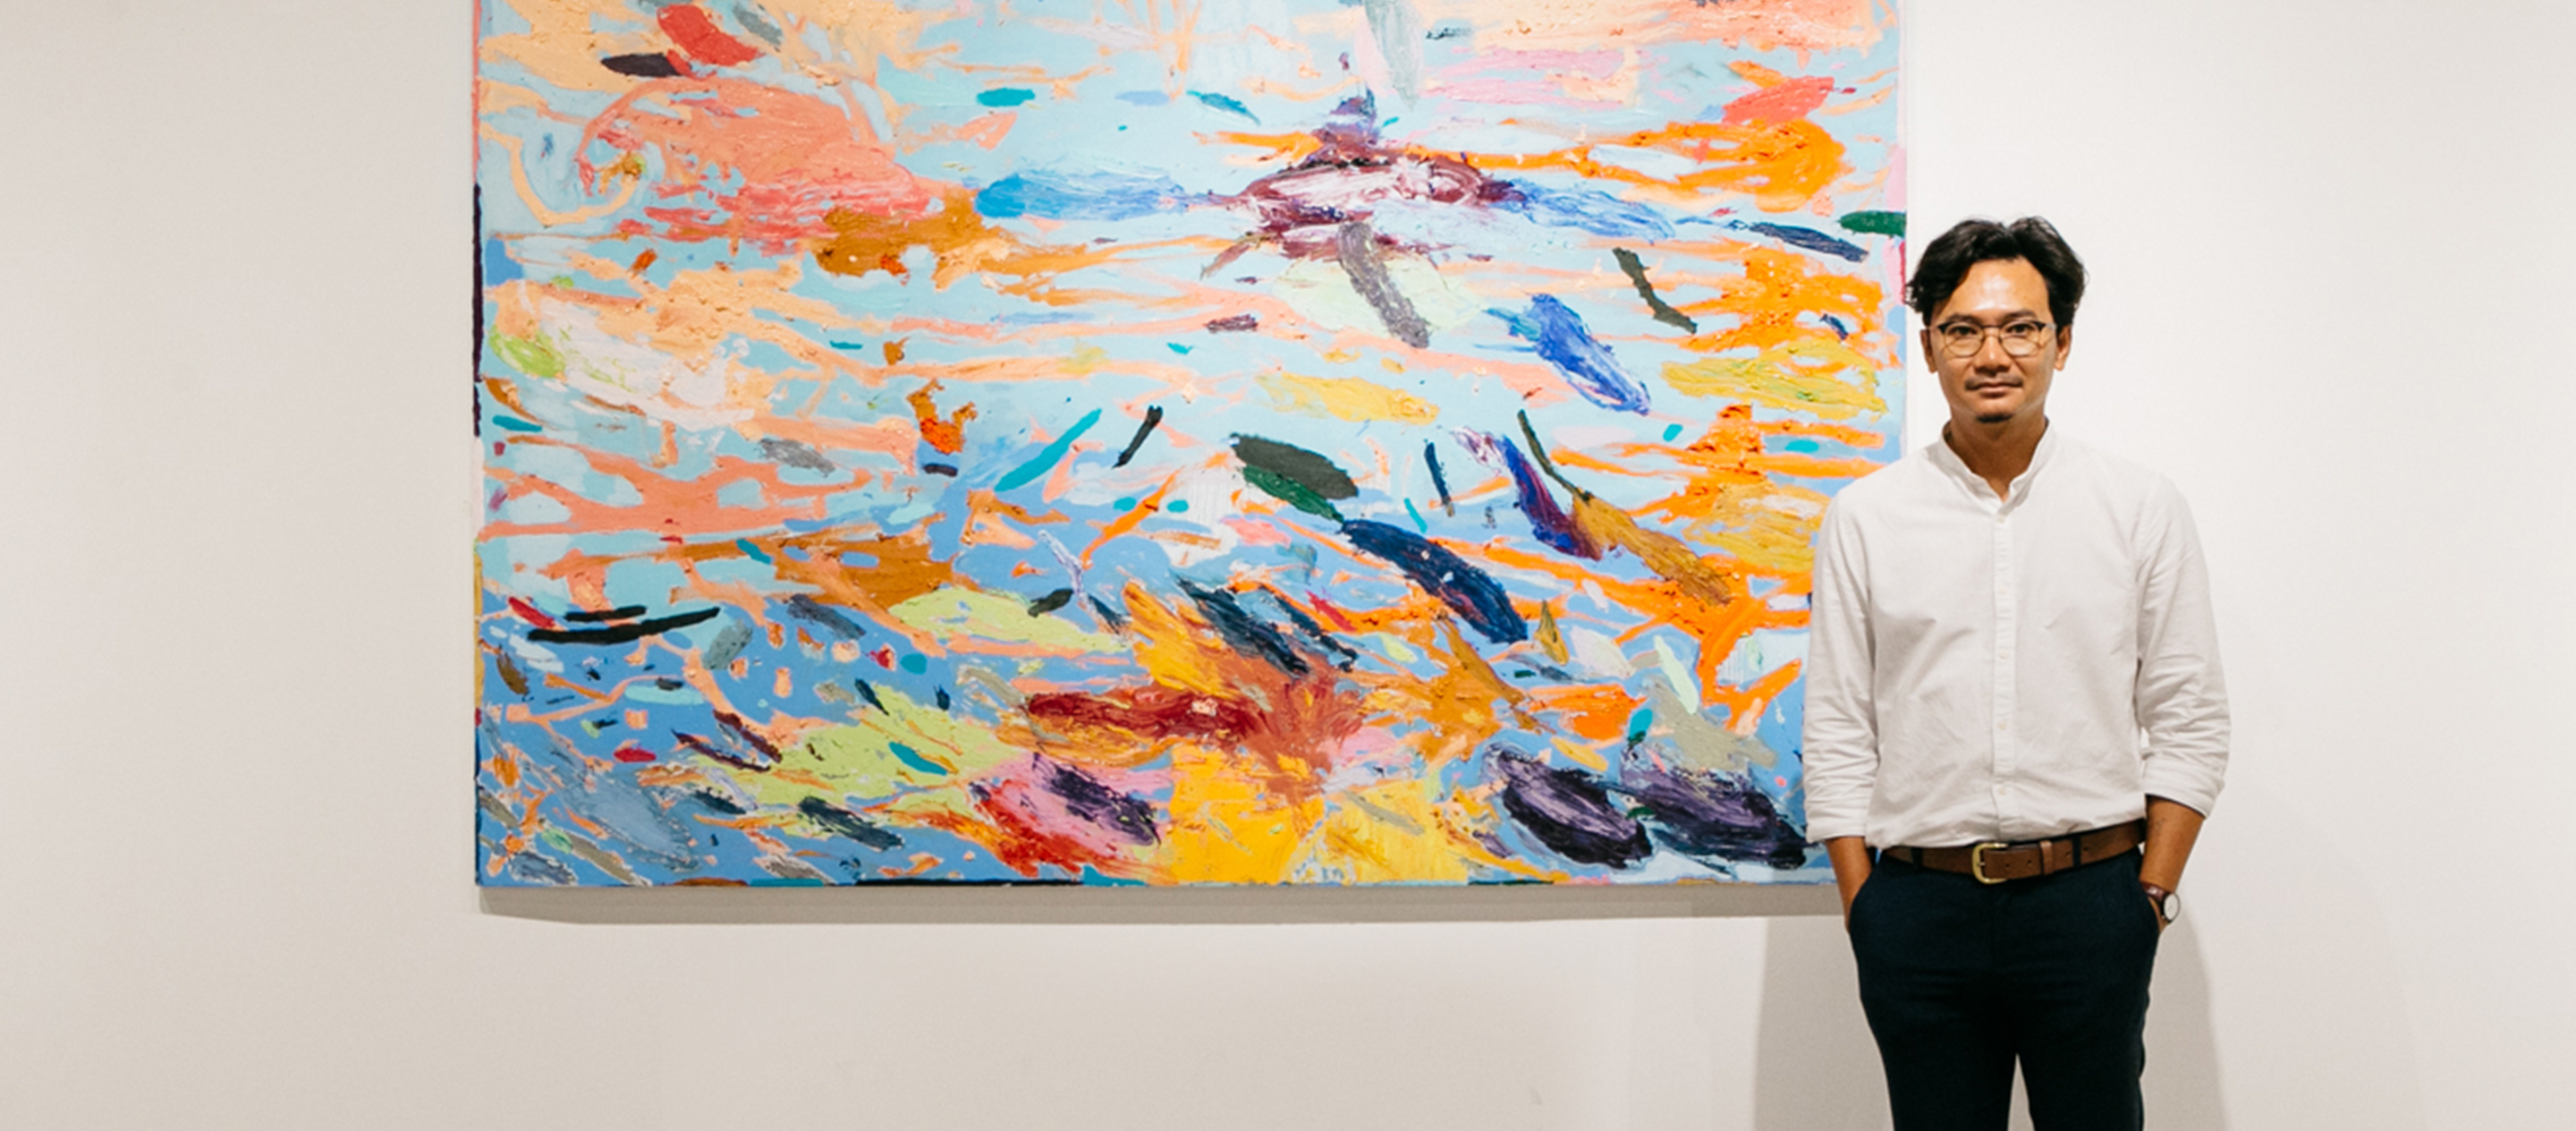 อาจิณโจนาธาน อาจิณกิจ ศิลปิน Abstract ที่พูดเรื่องความเปลี่ยนแปลงของพื้นที่และผู้คนในนิทรรศการ Body of Space